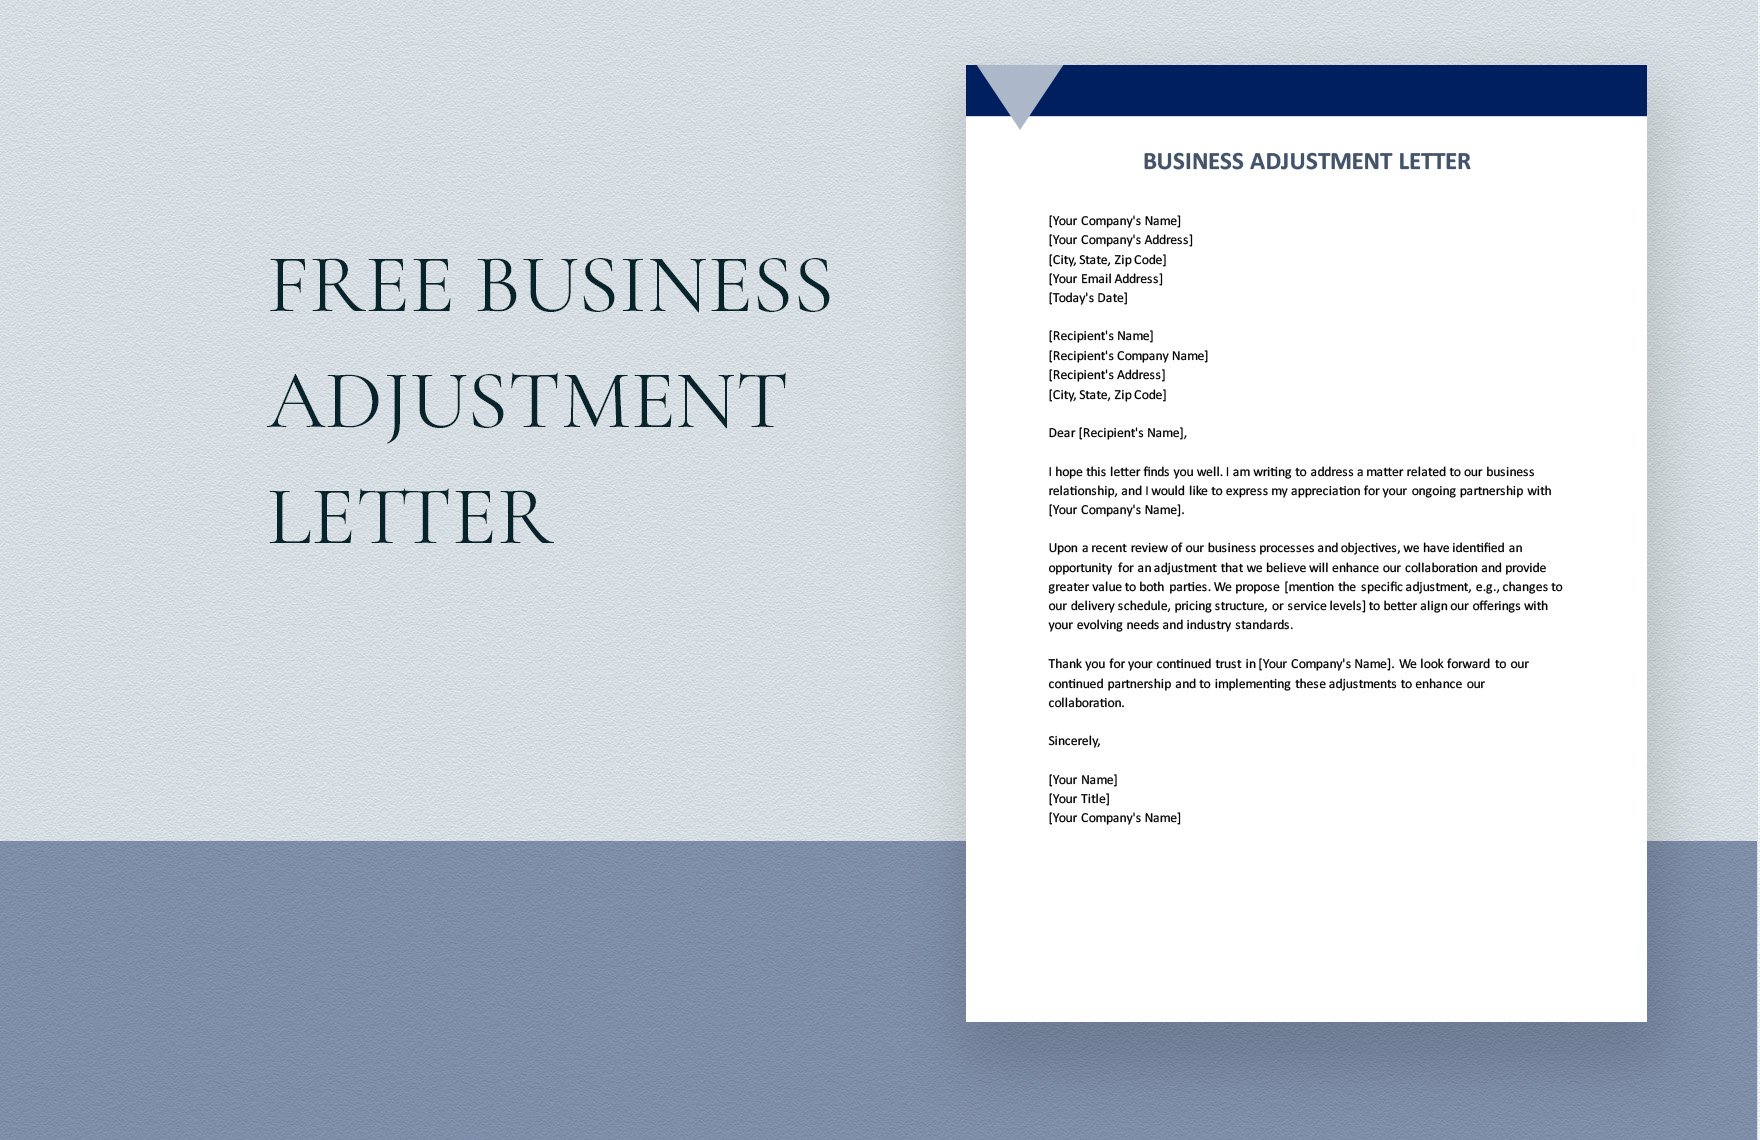 Business Adjustment Letter